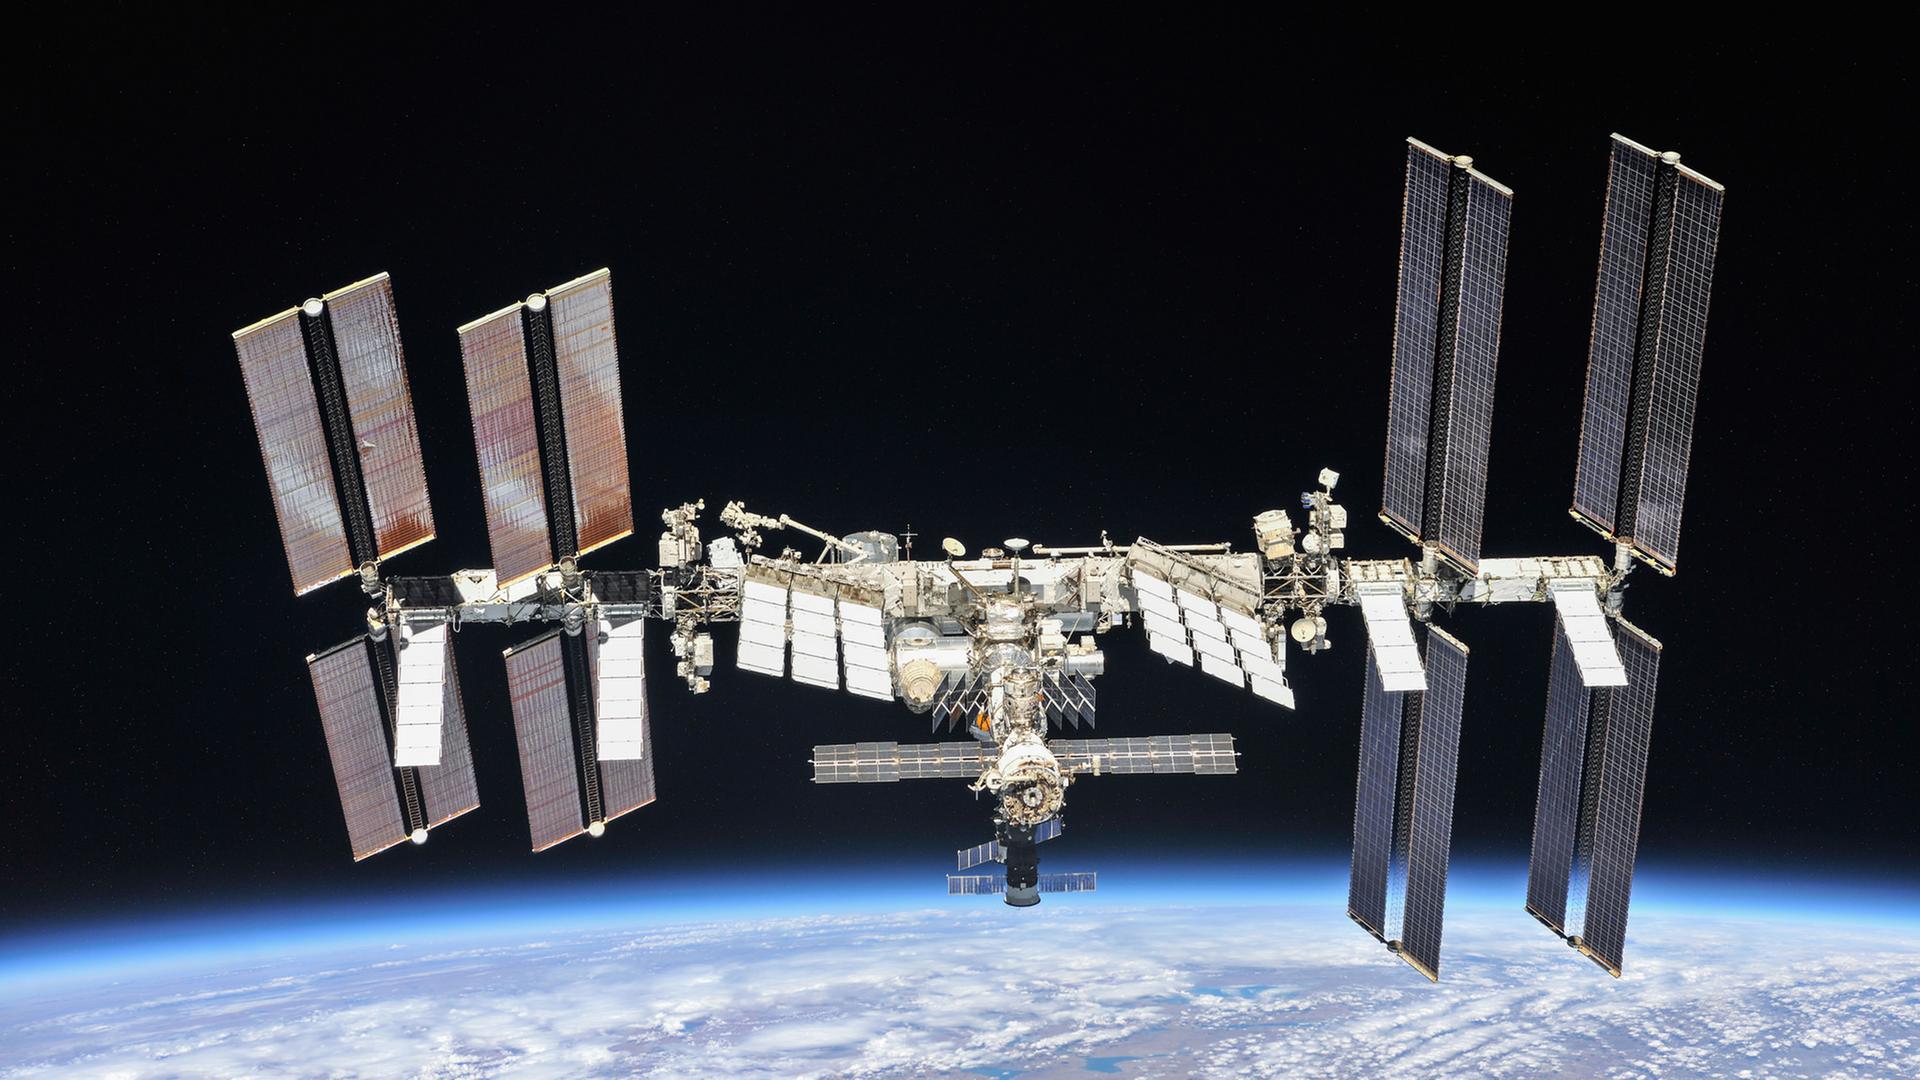 Die Internationale Raumstation ISS, aufgenommen im Oktober 2018 vor dem Dunkel des Alls über dem Blau der Erde